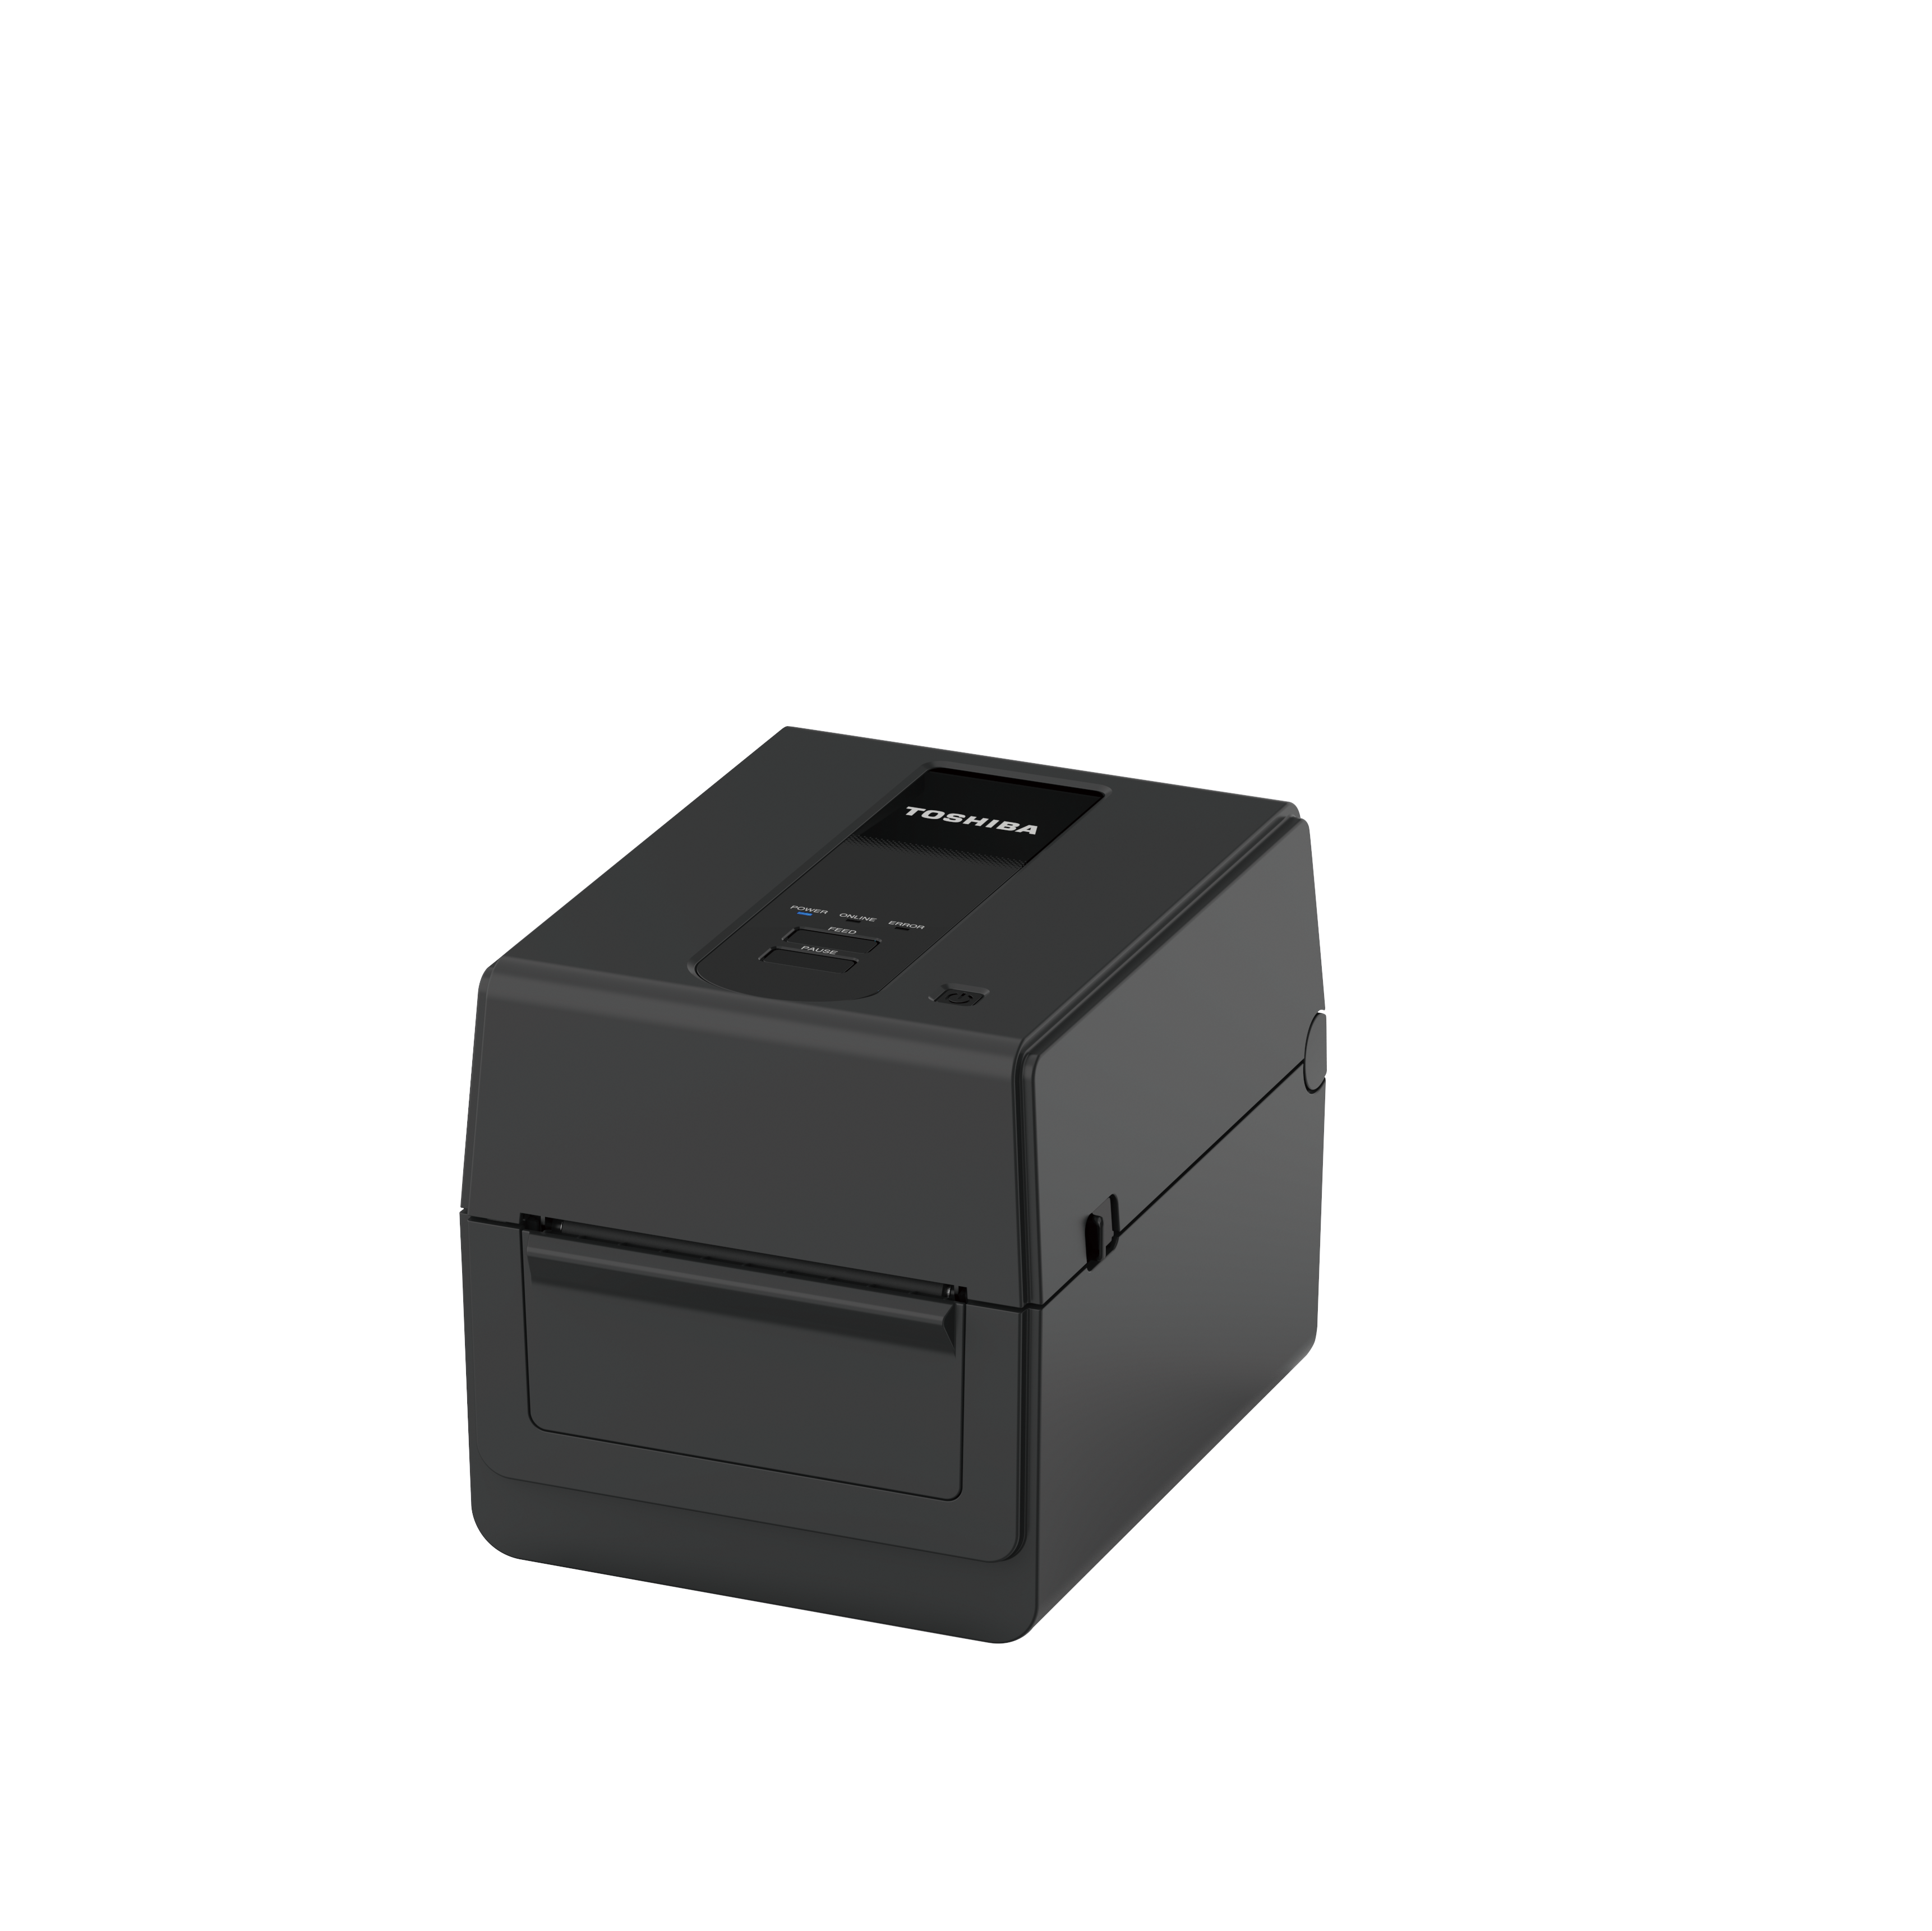 Toshiba BV420D Etikettendrucker Desktop